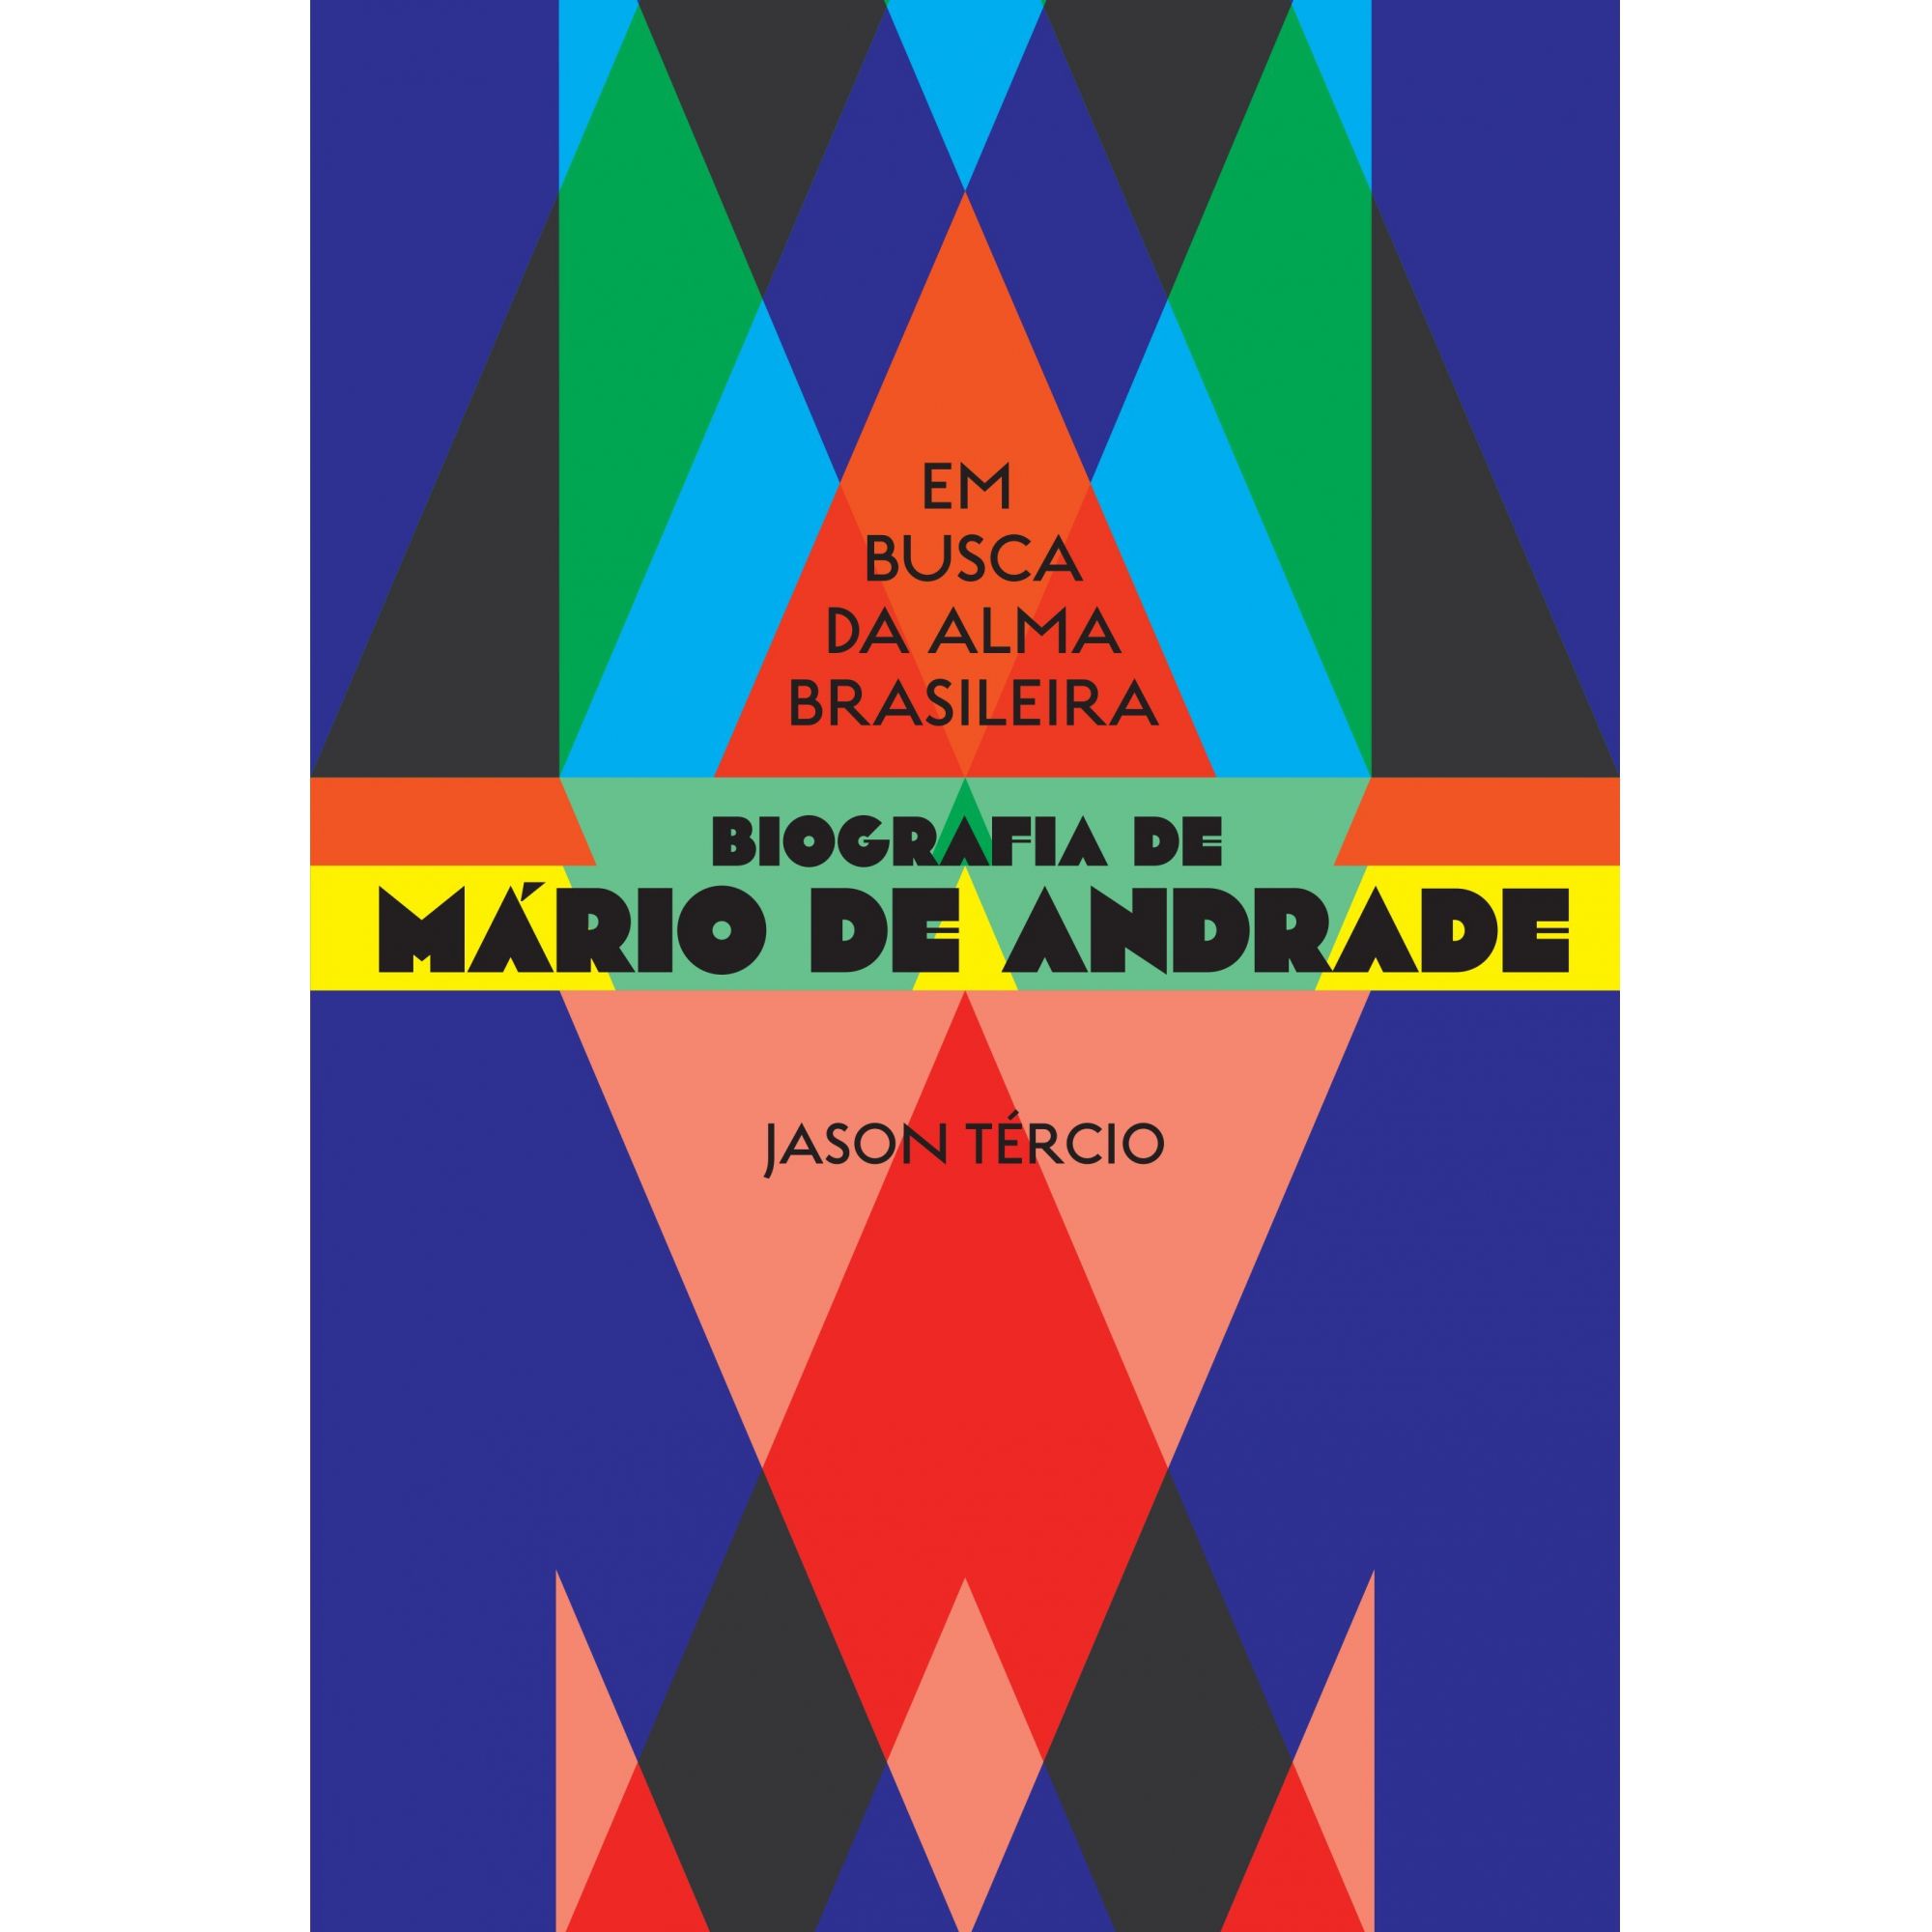 Em busca da alma brasileira - biografia de Mário de Andrade